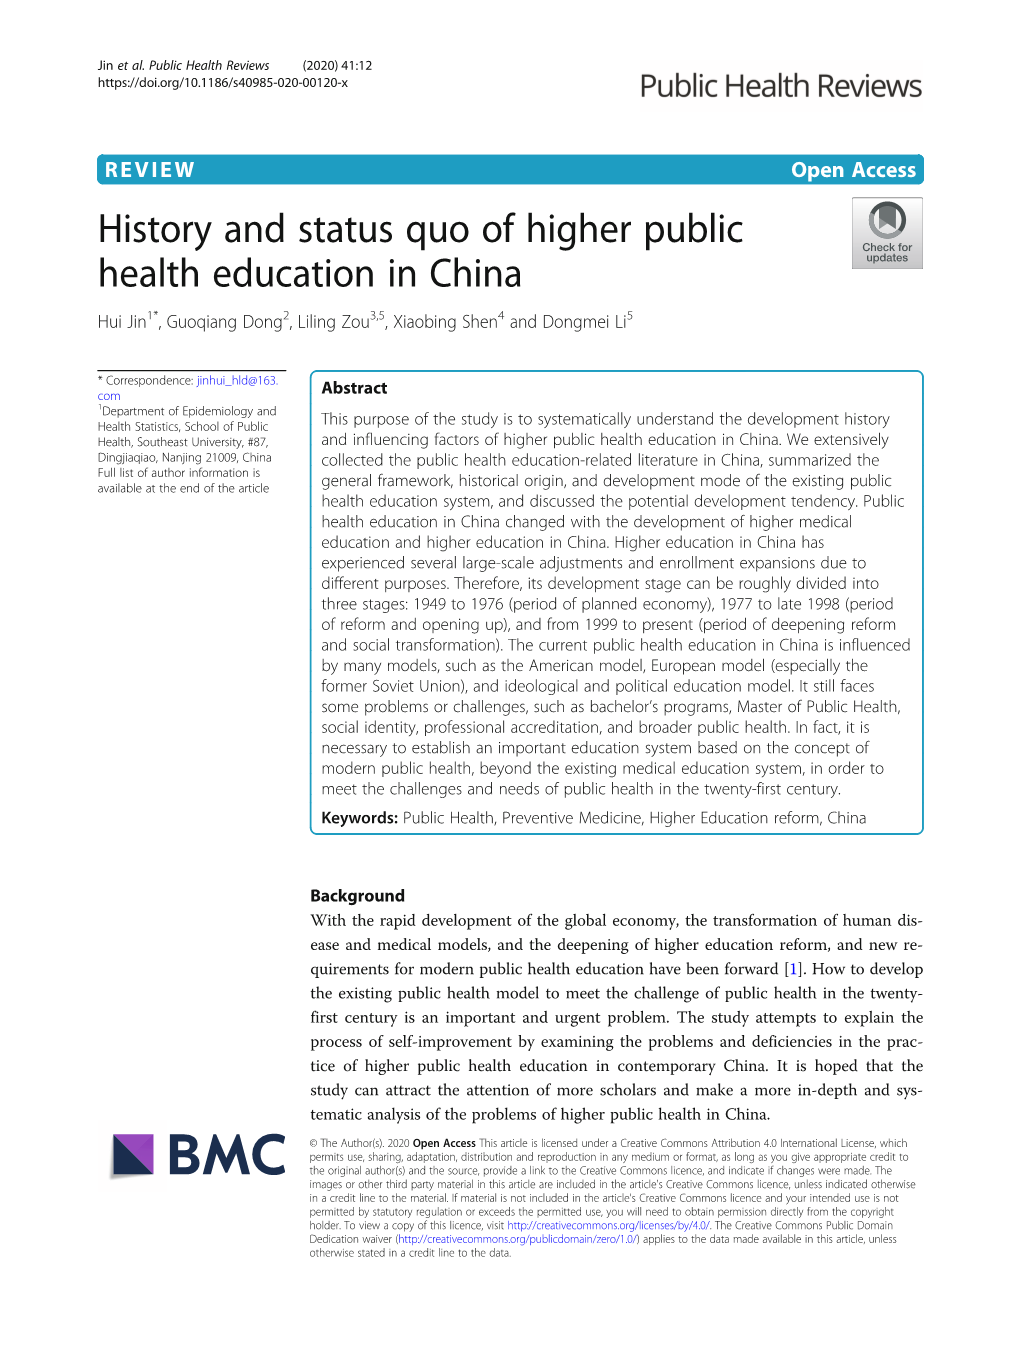 History and Status Quo of Higher Public Health Education in China Hui Jin1*, Guoqiang Dong2, Liling Zou3,5, Xiaobing Shen4 and Dongmei Li5